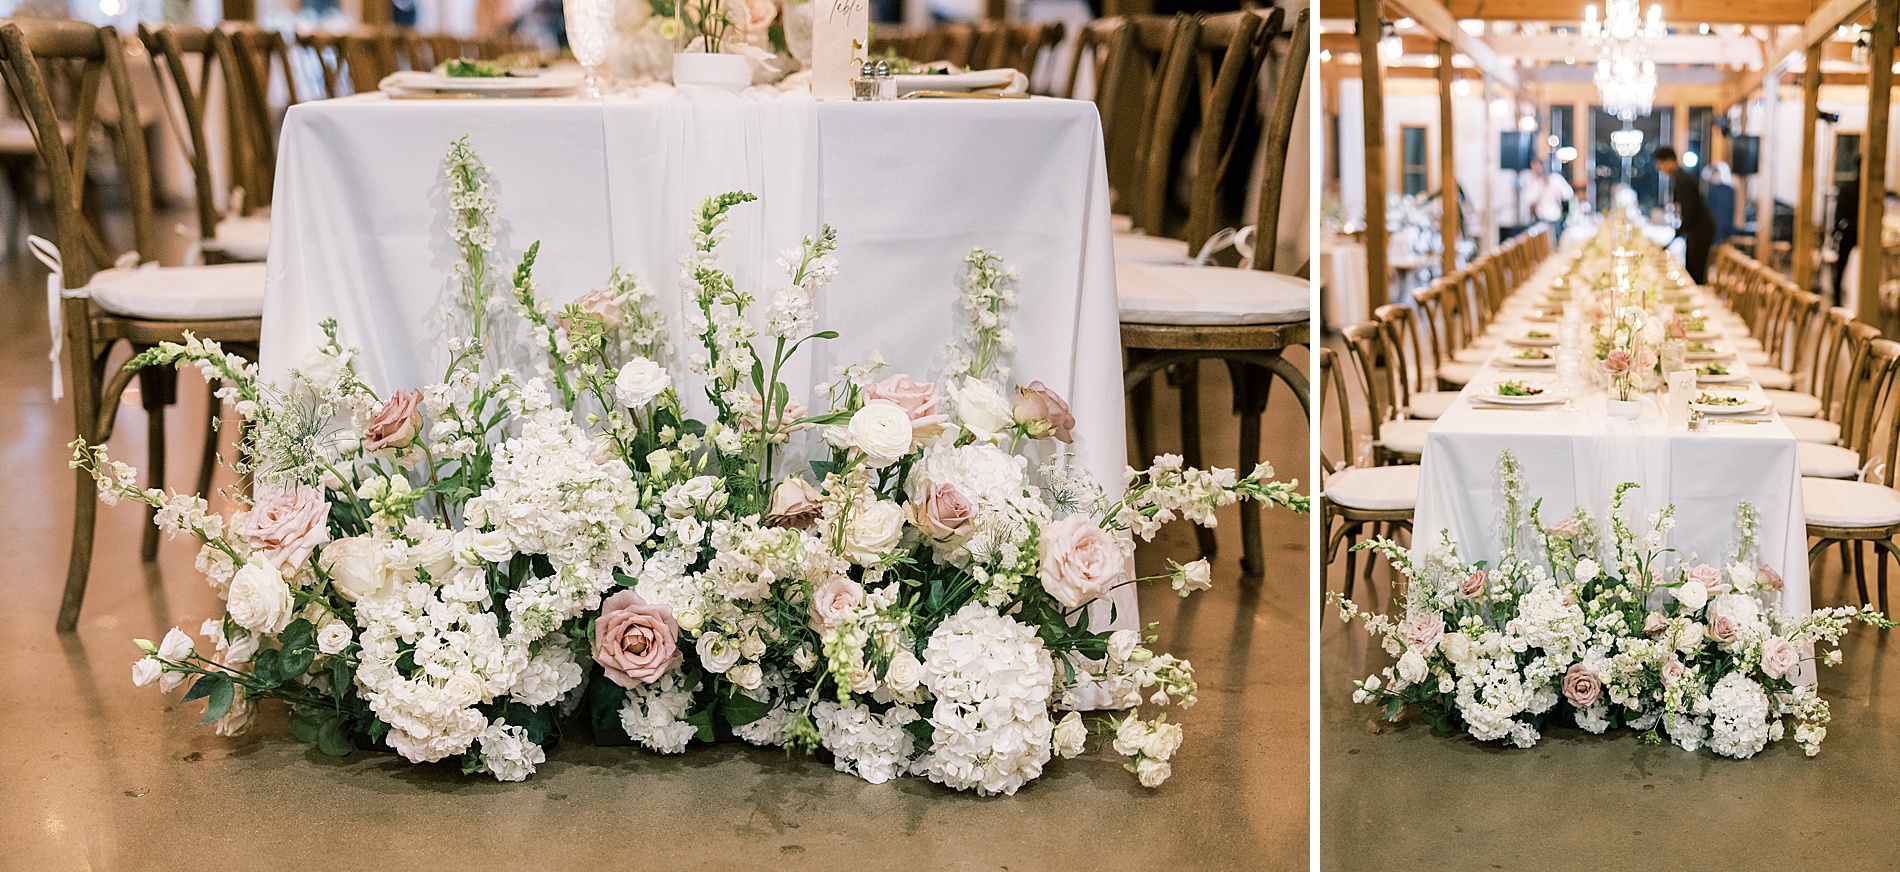 elegant garden floral arrangements around table